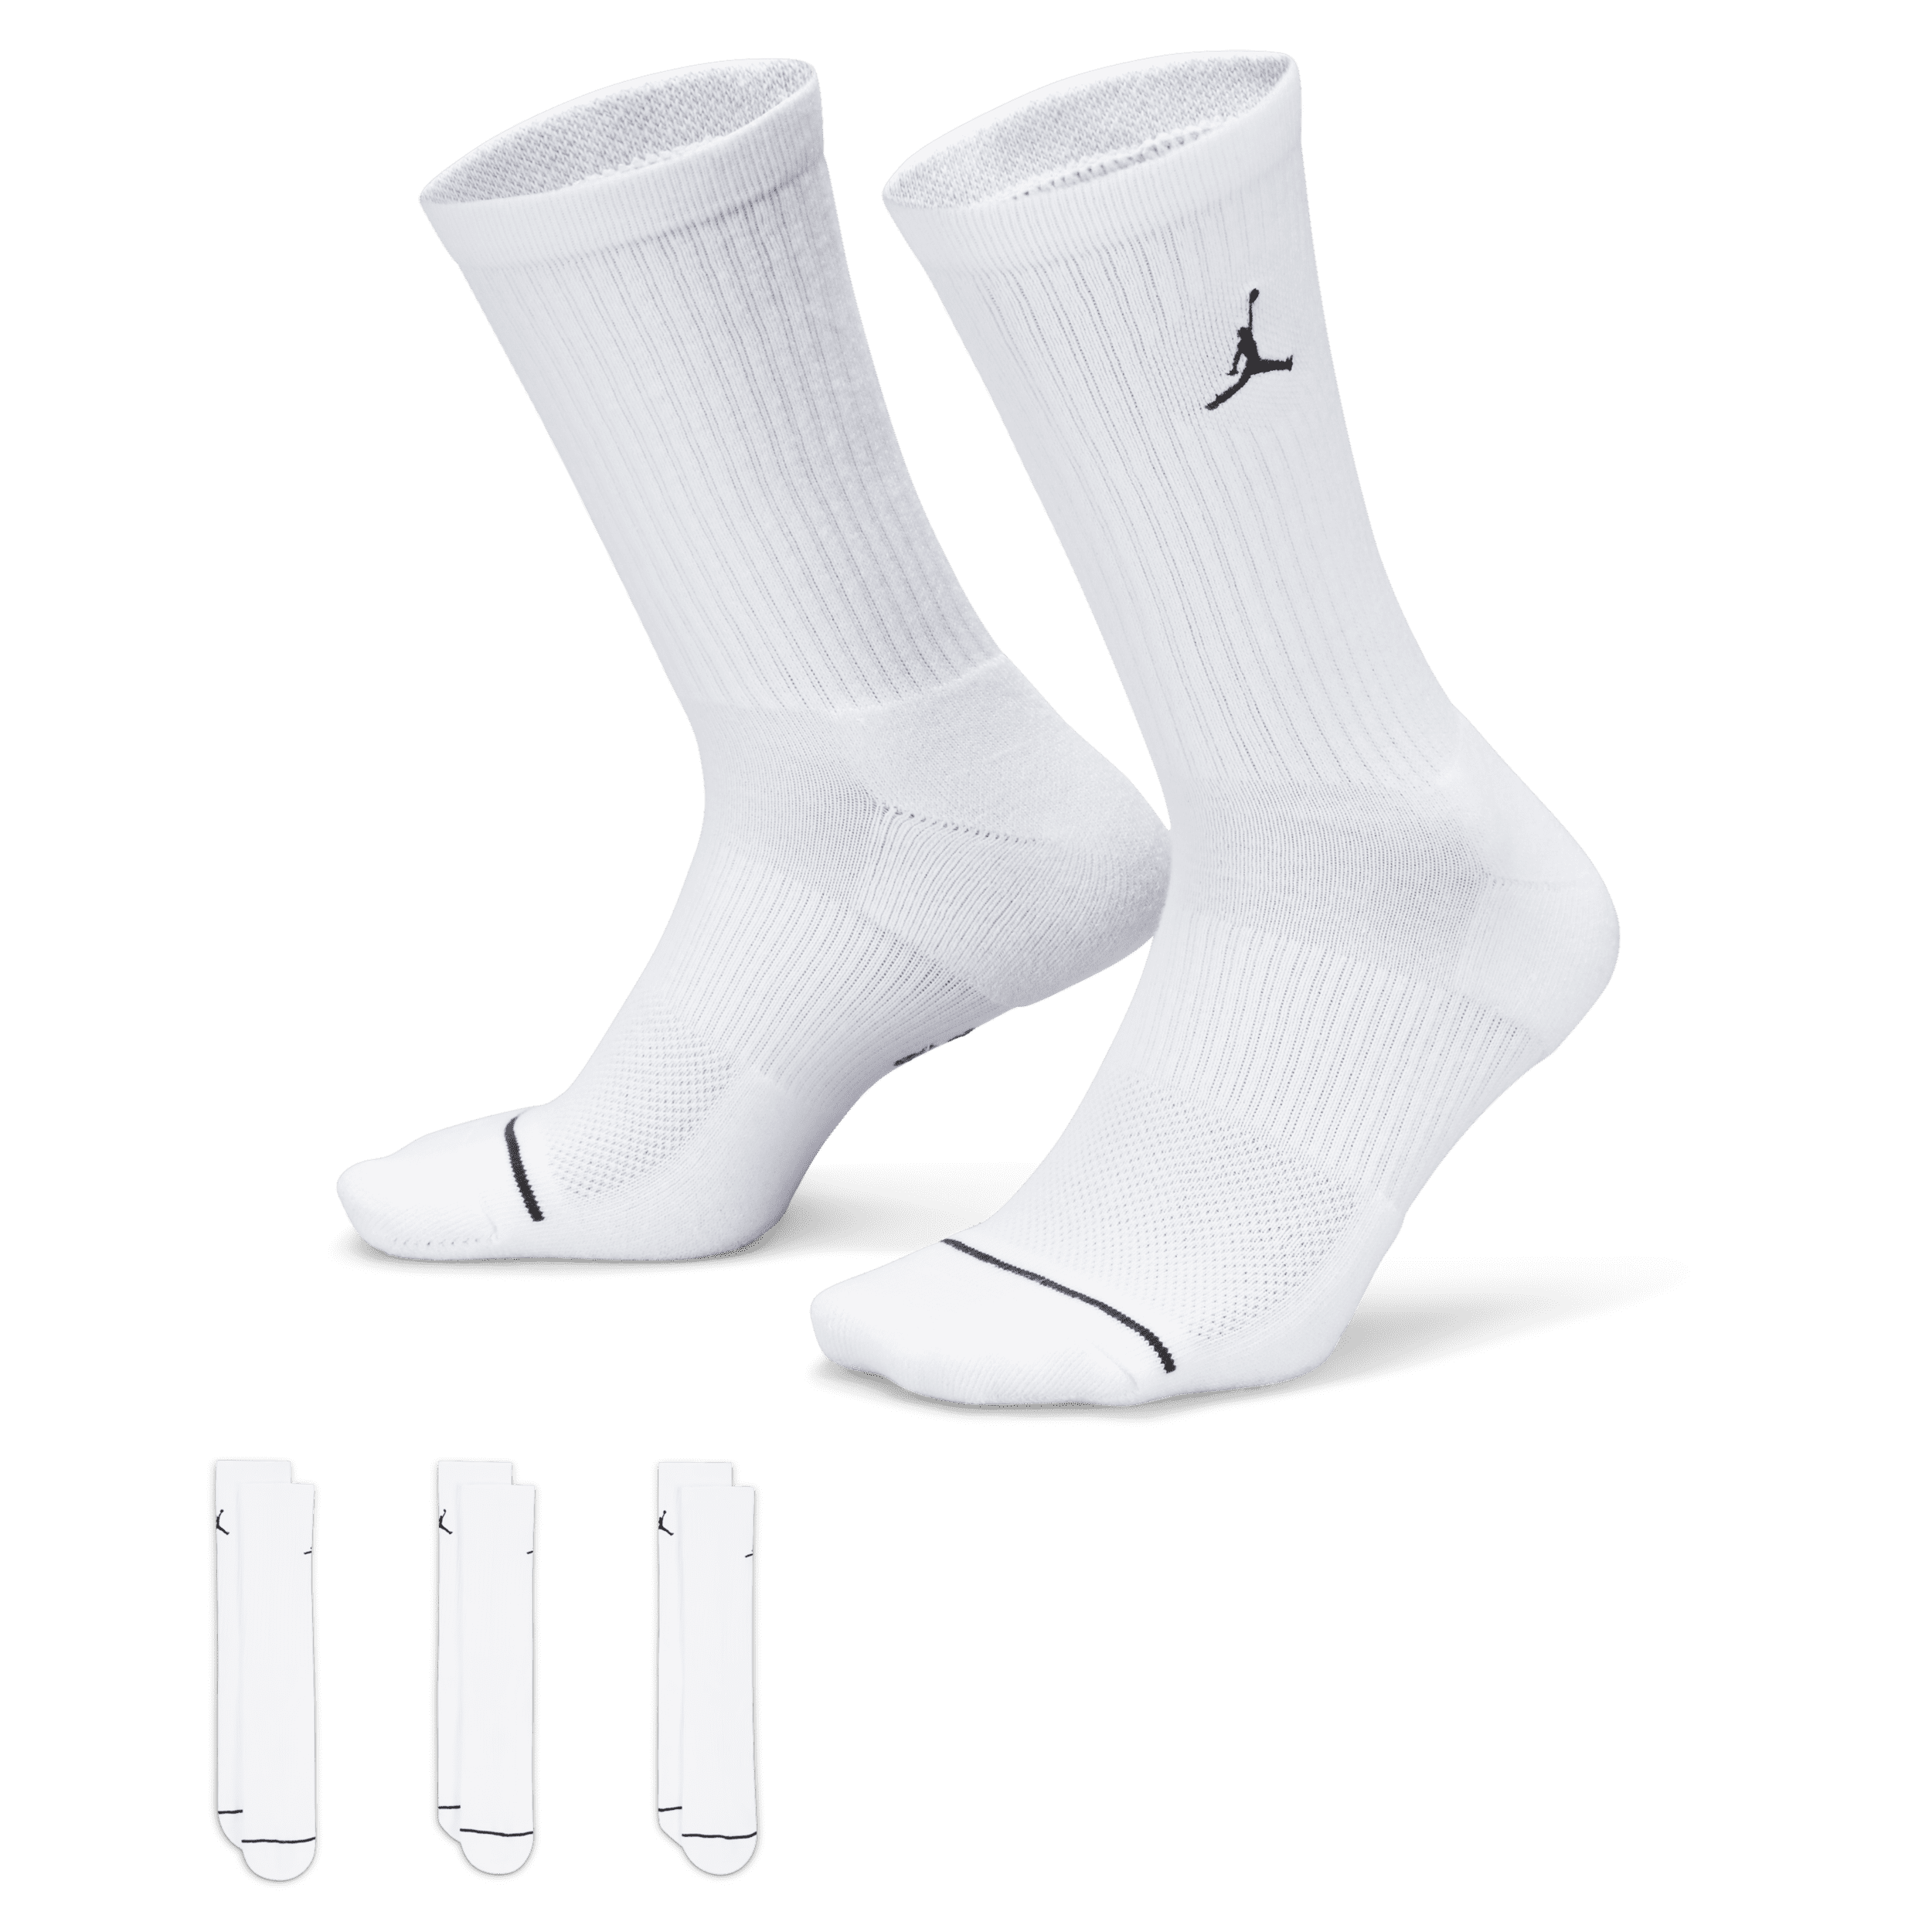 Jordan-hverdagscrewstrømper (3 par) - hvid